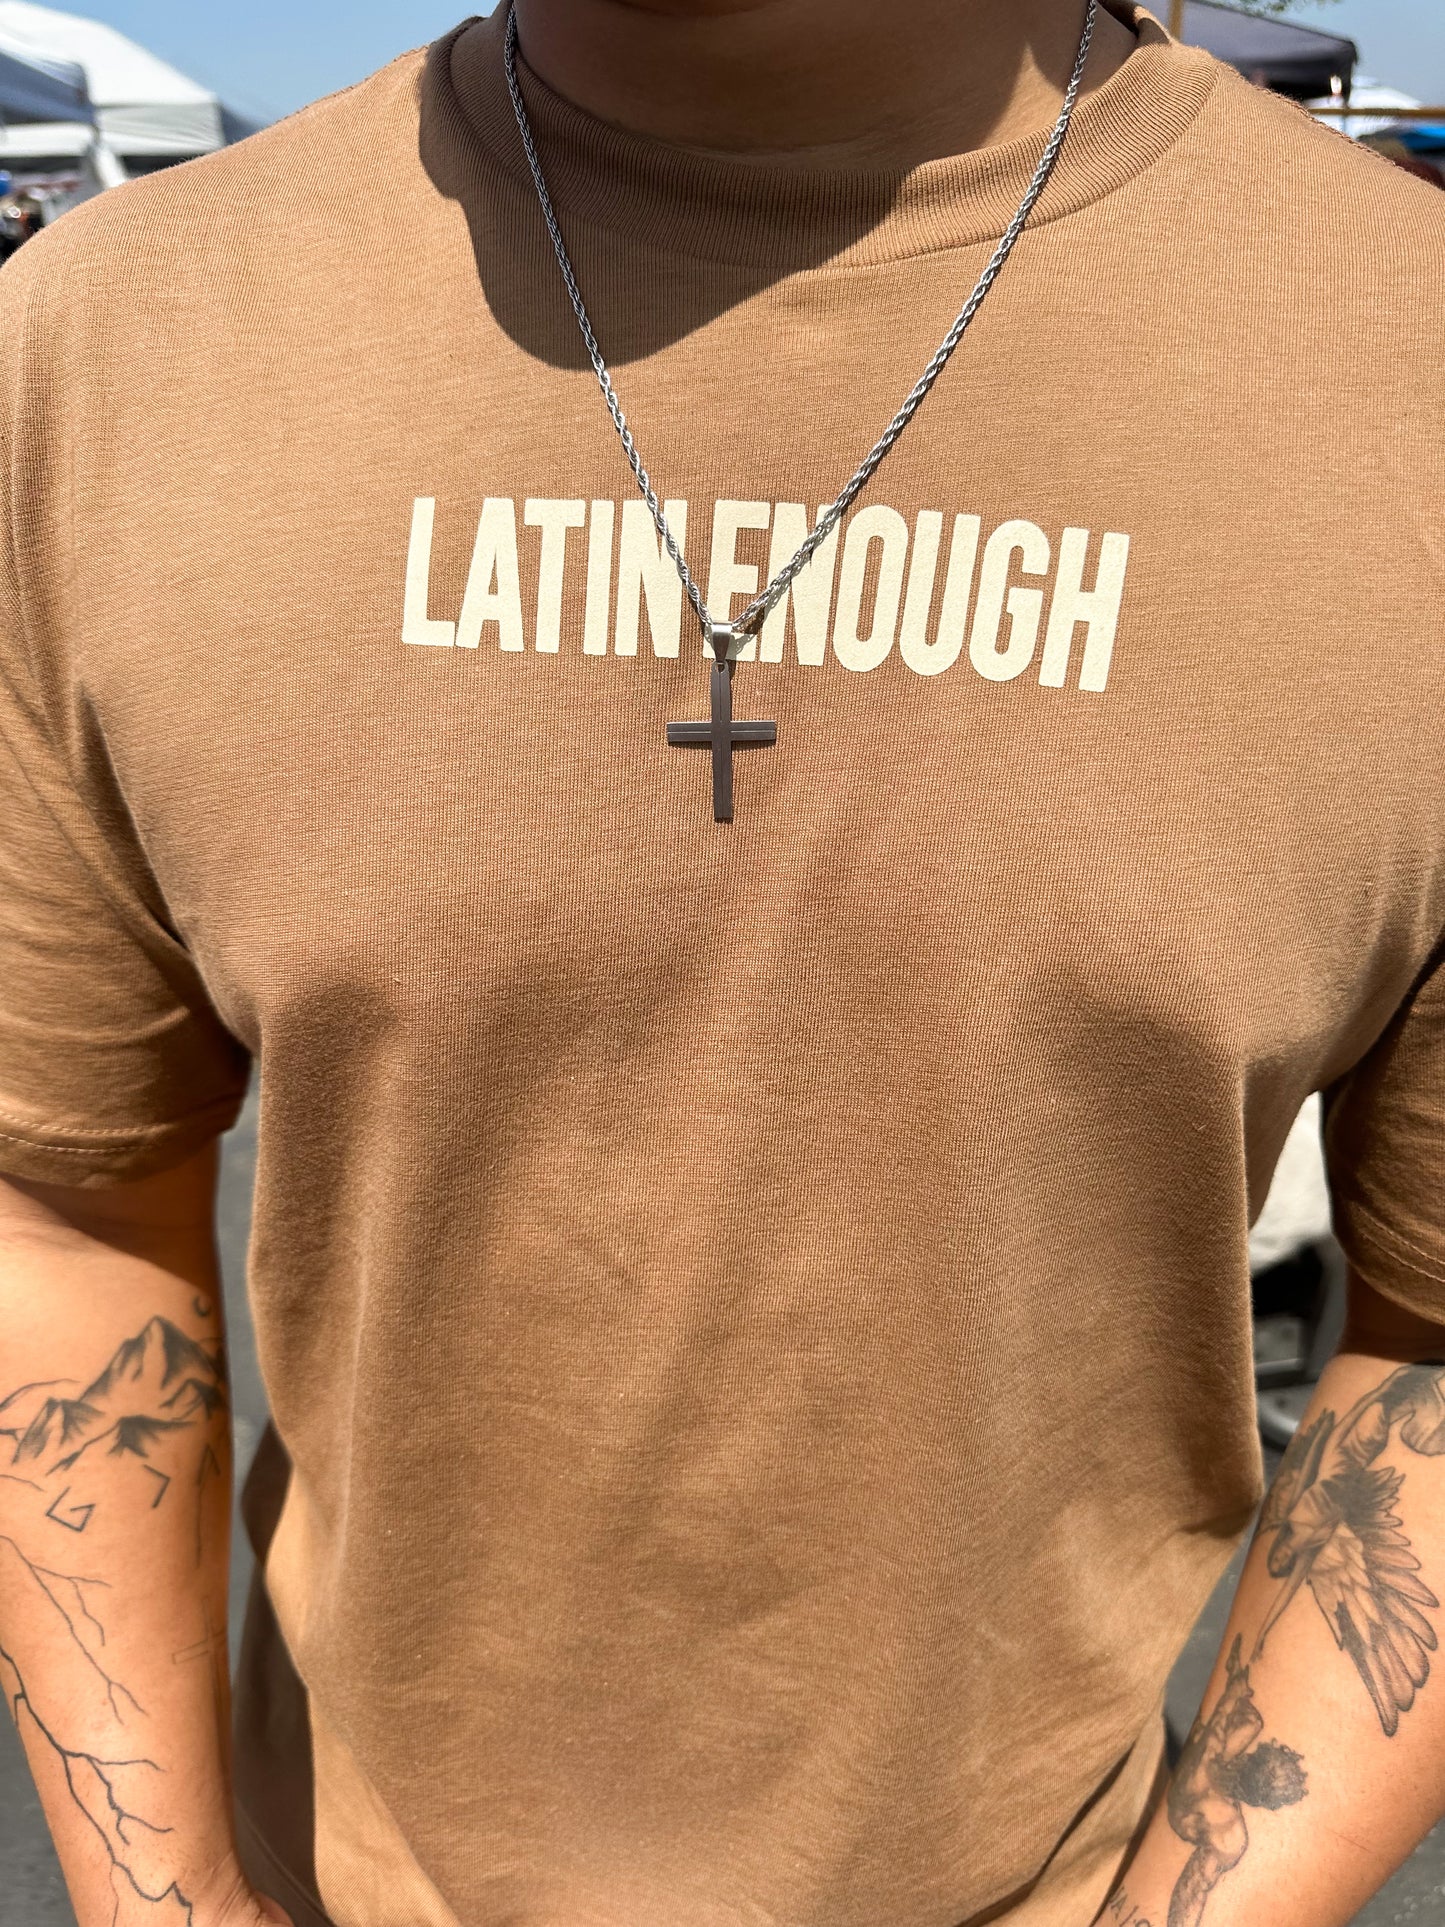 Latin/Latina Enough Tee